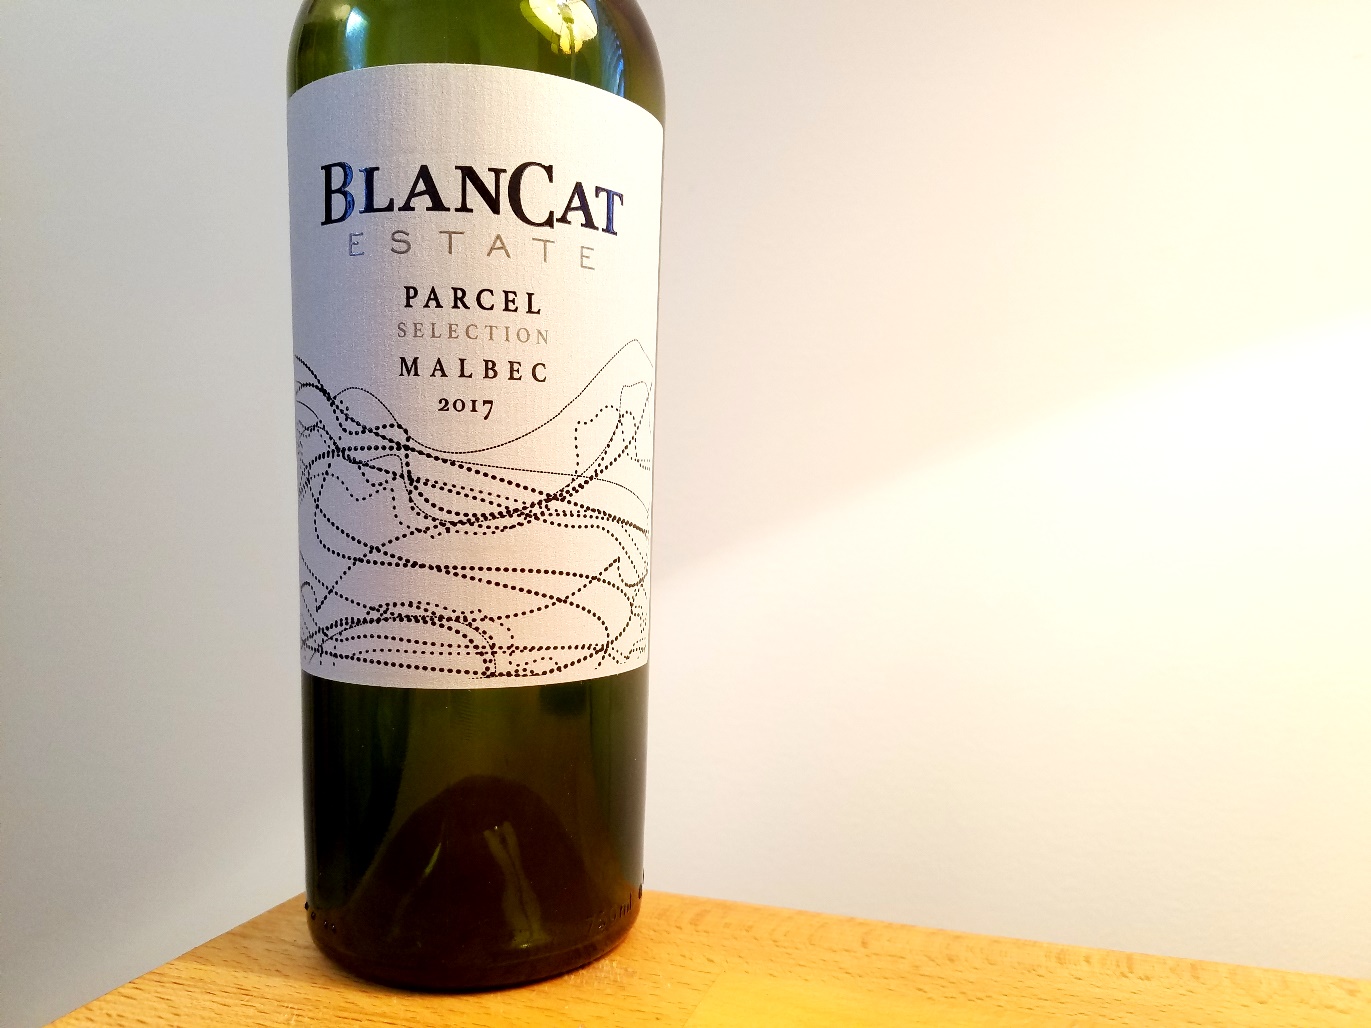 BlanCat Estate, Parcel Selection Malbec 2017, Mendoza, Argentina, Wine Casual